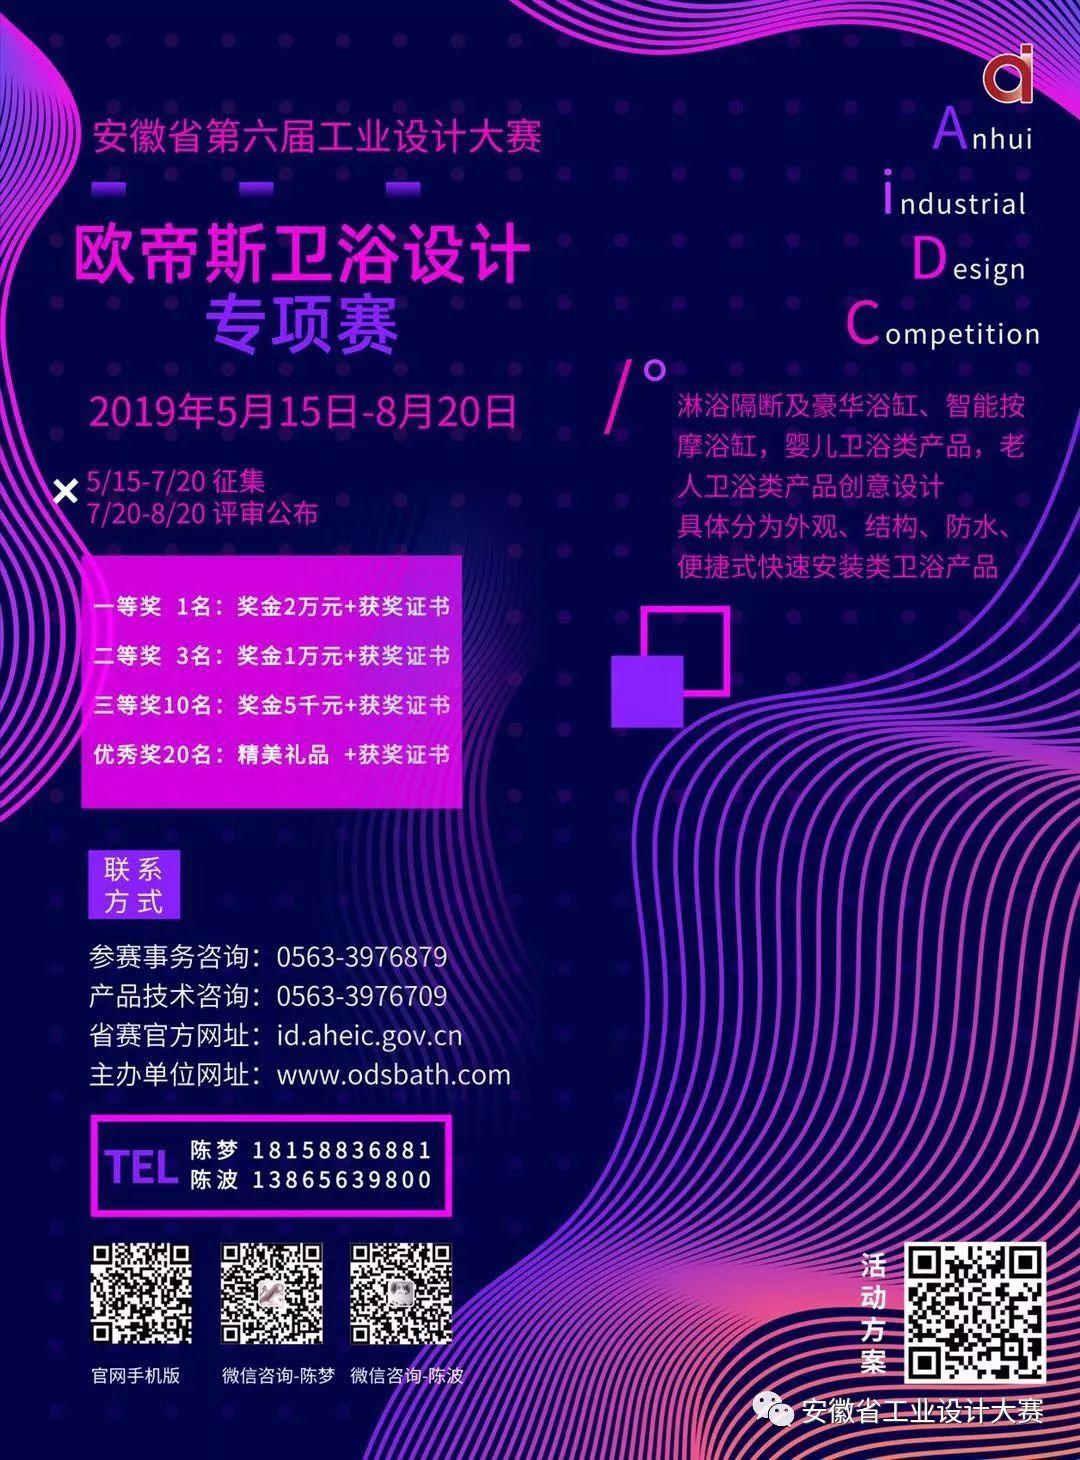 2019安徽省第六屆工業設計大賽「歐帝斯衛浴杯」專項賽